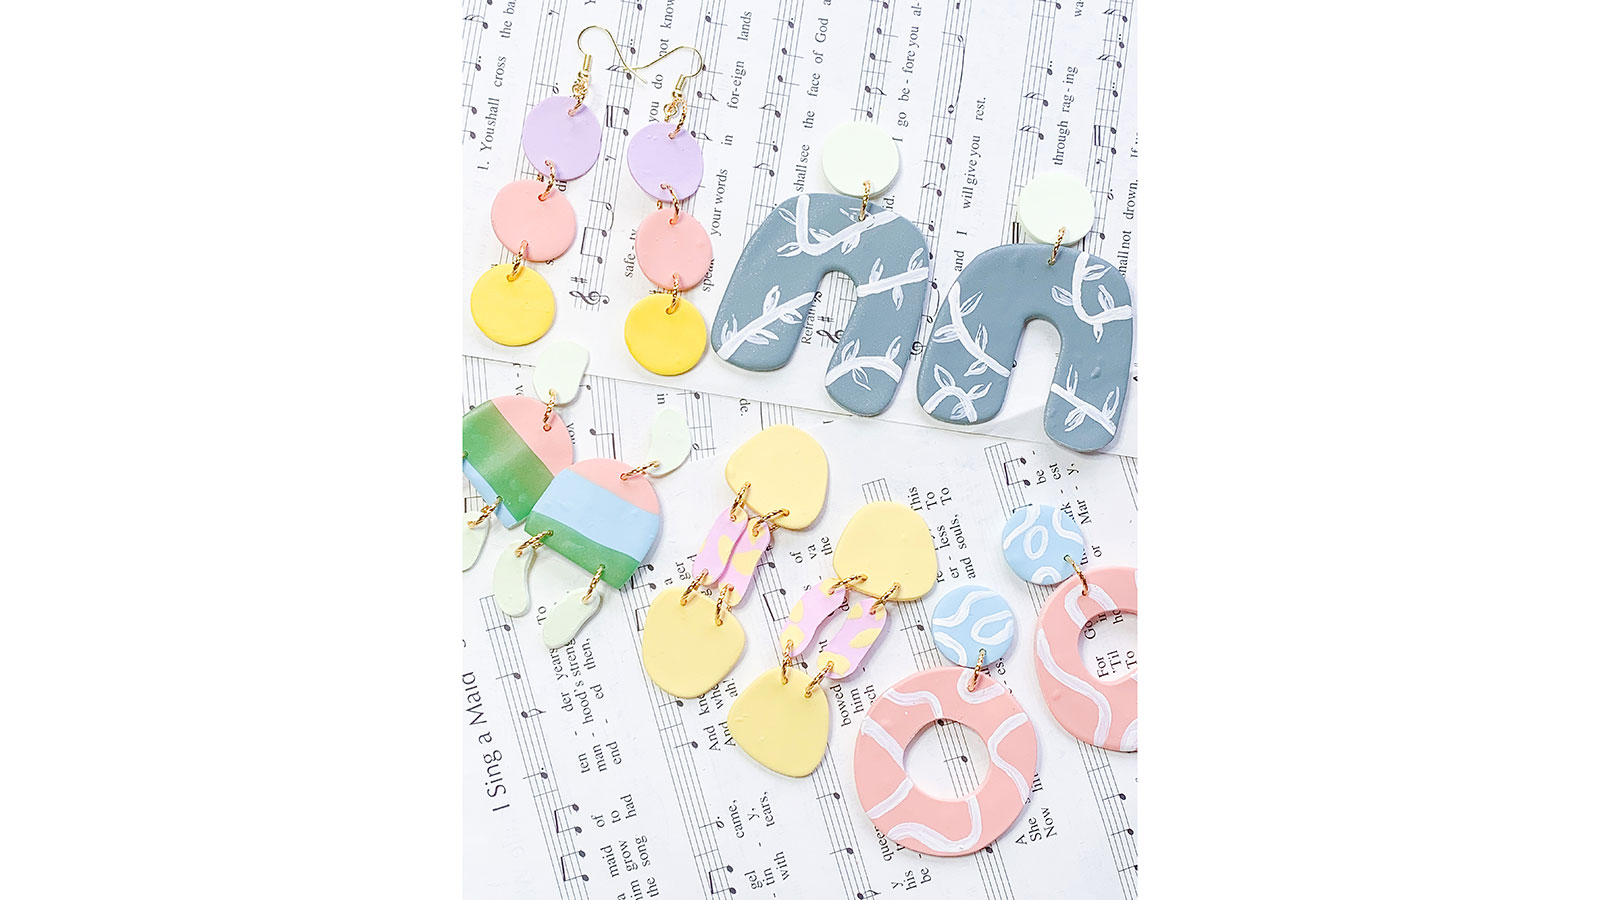 colorful earrings